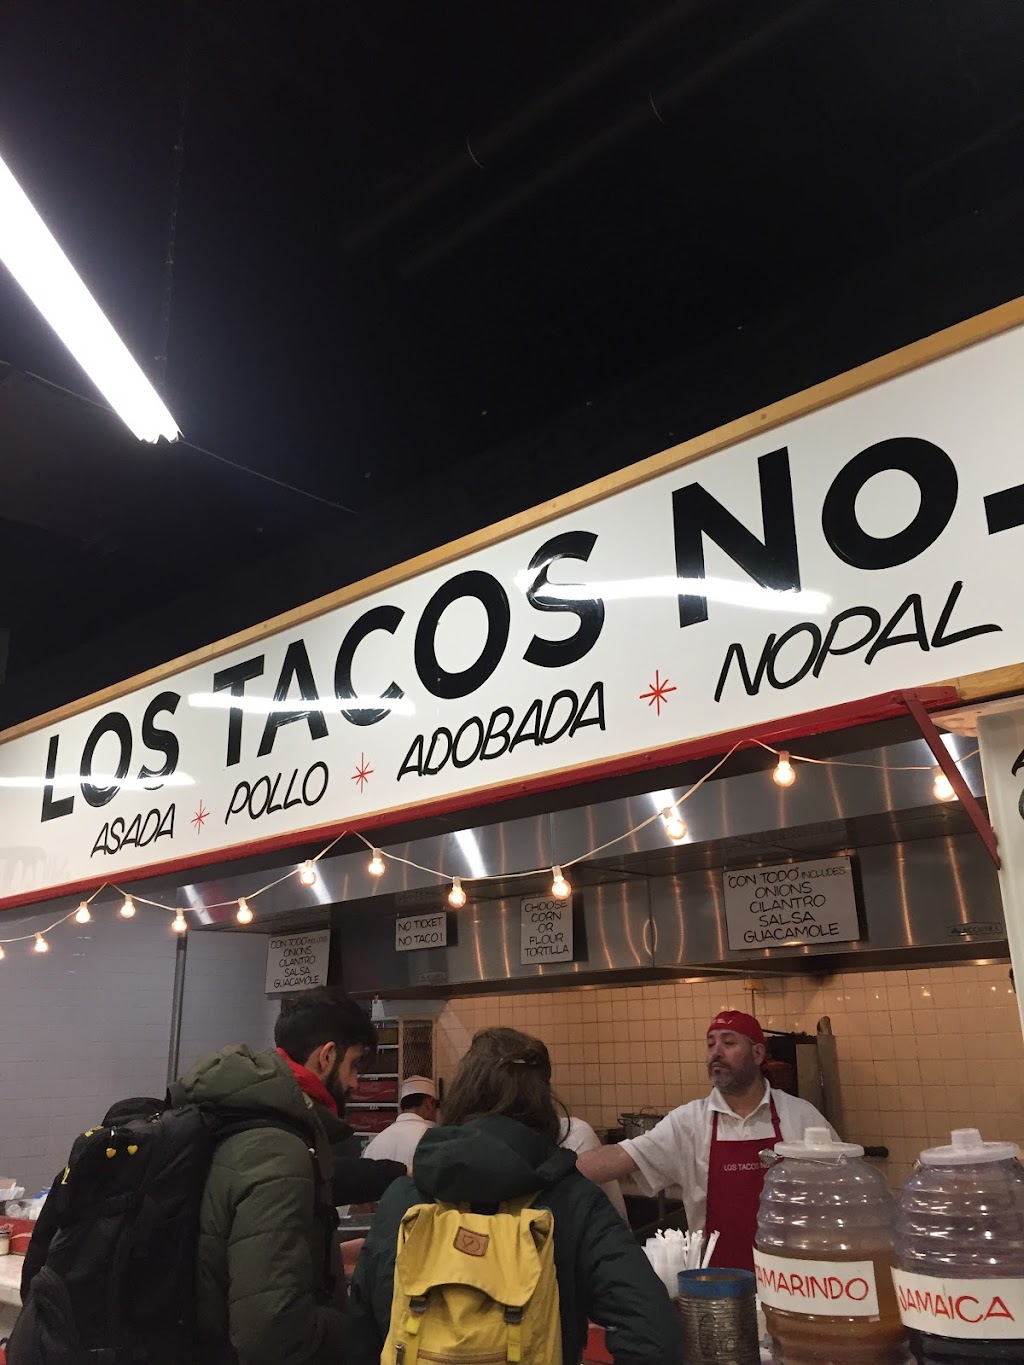 Los Tacos | restaurant | 214 W 43rd St, New York, NY 10036, USA